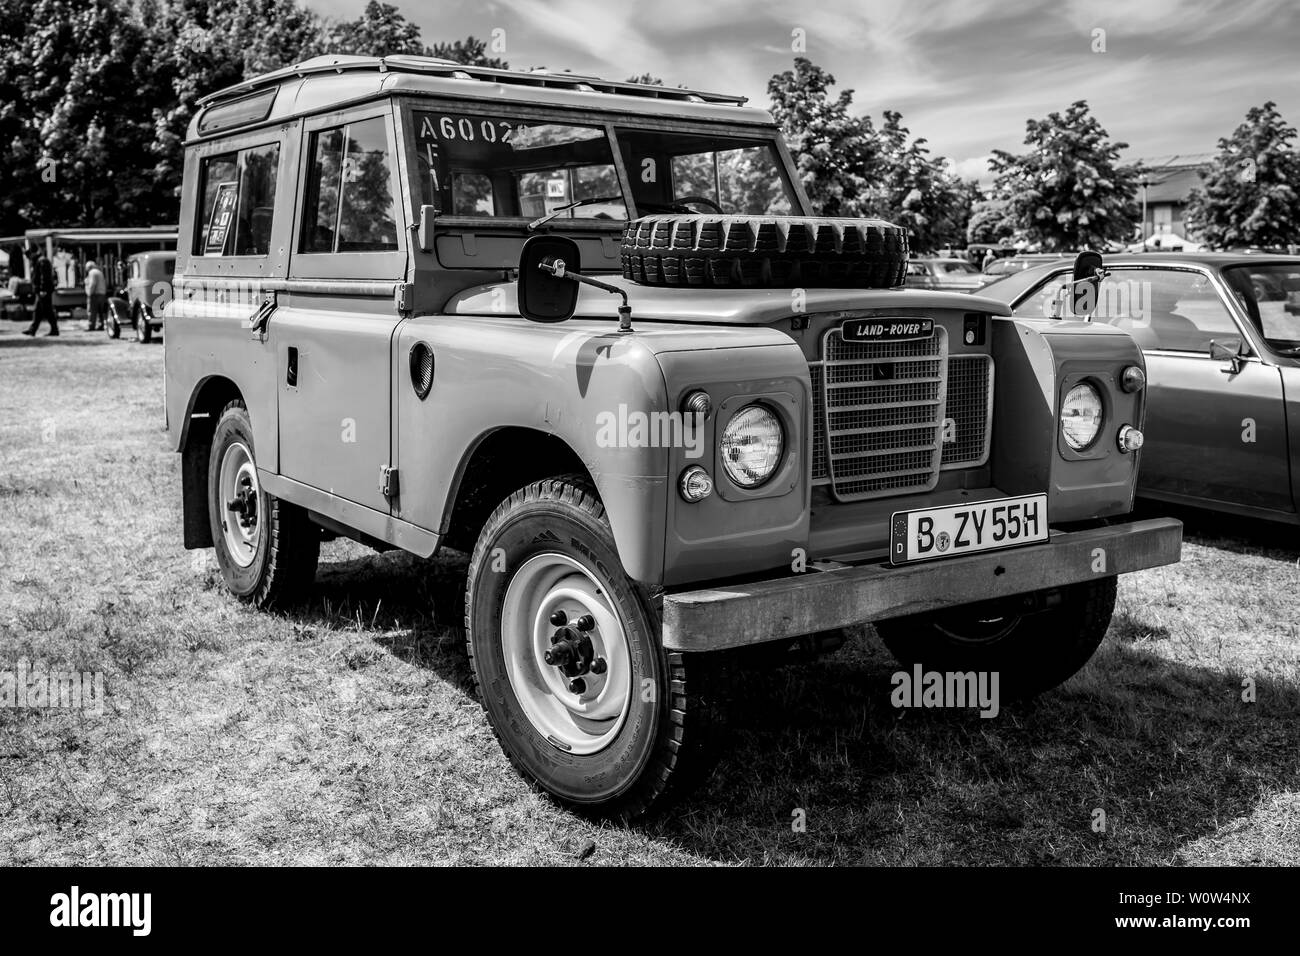 PAAREN IM GLIEN, ALLEMAGNE - le 19 mai 2018 : véhicule hors route Land Rover Series III. Noir et blanc. Exposition 'Die Oldtimer Show 2018'. Banque D'Images